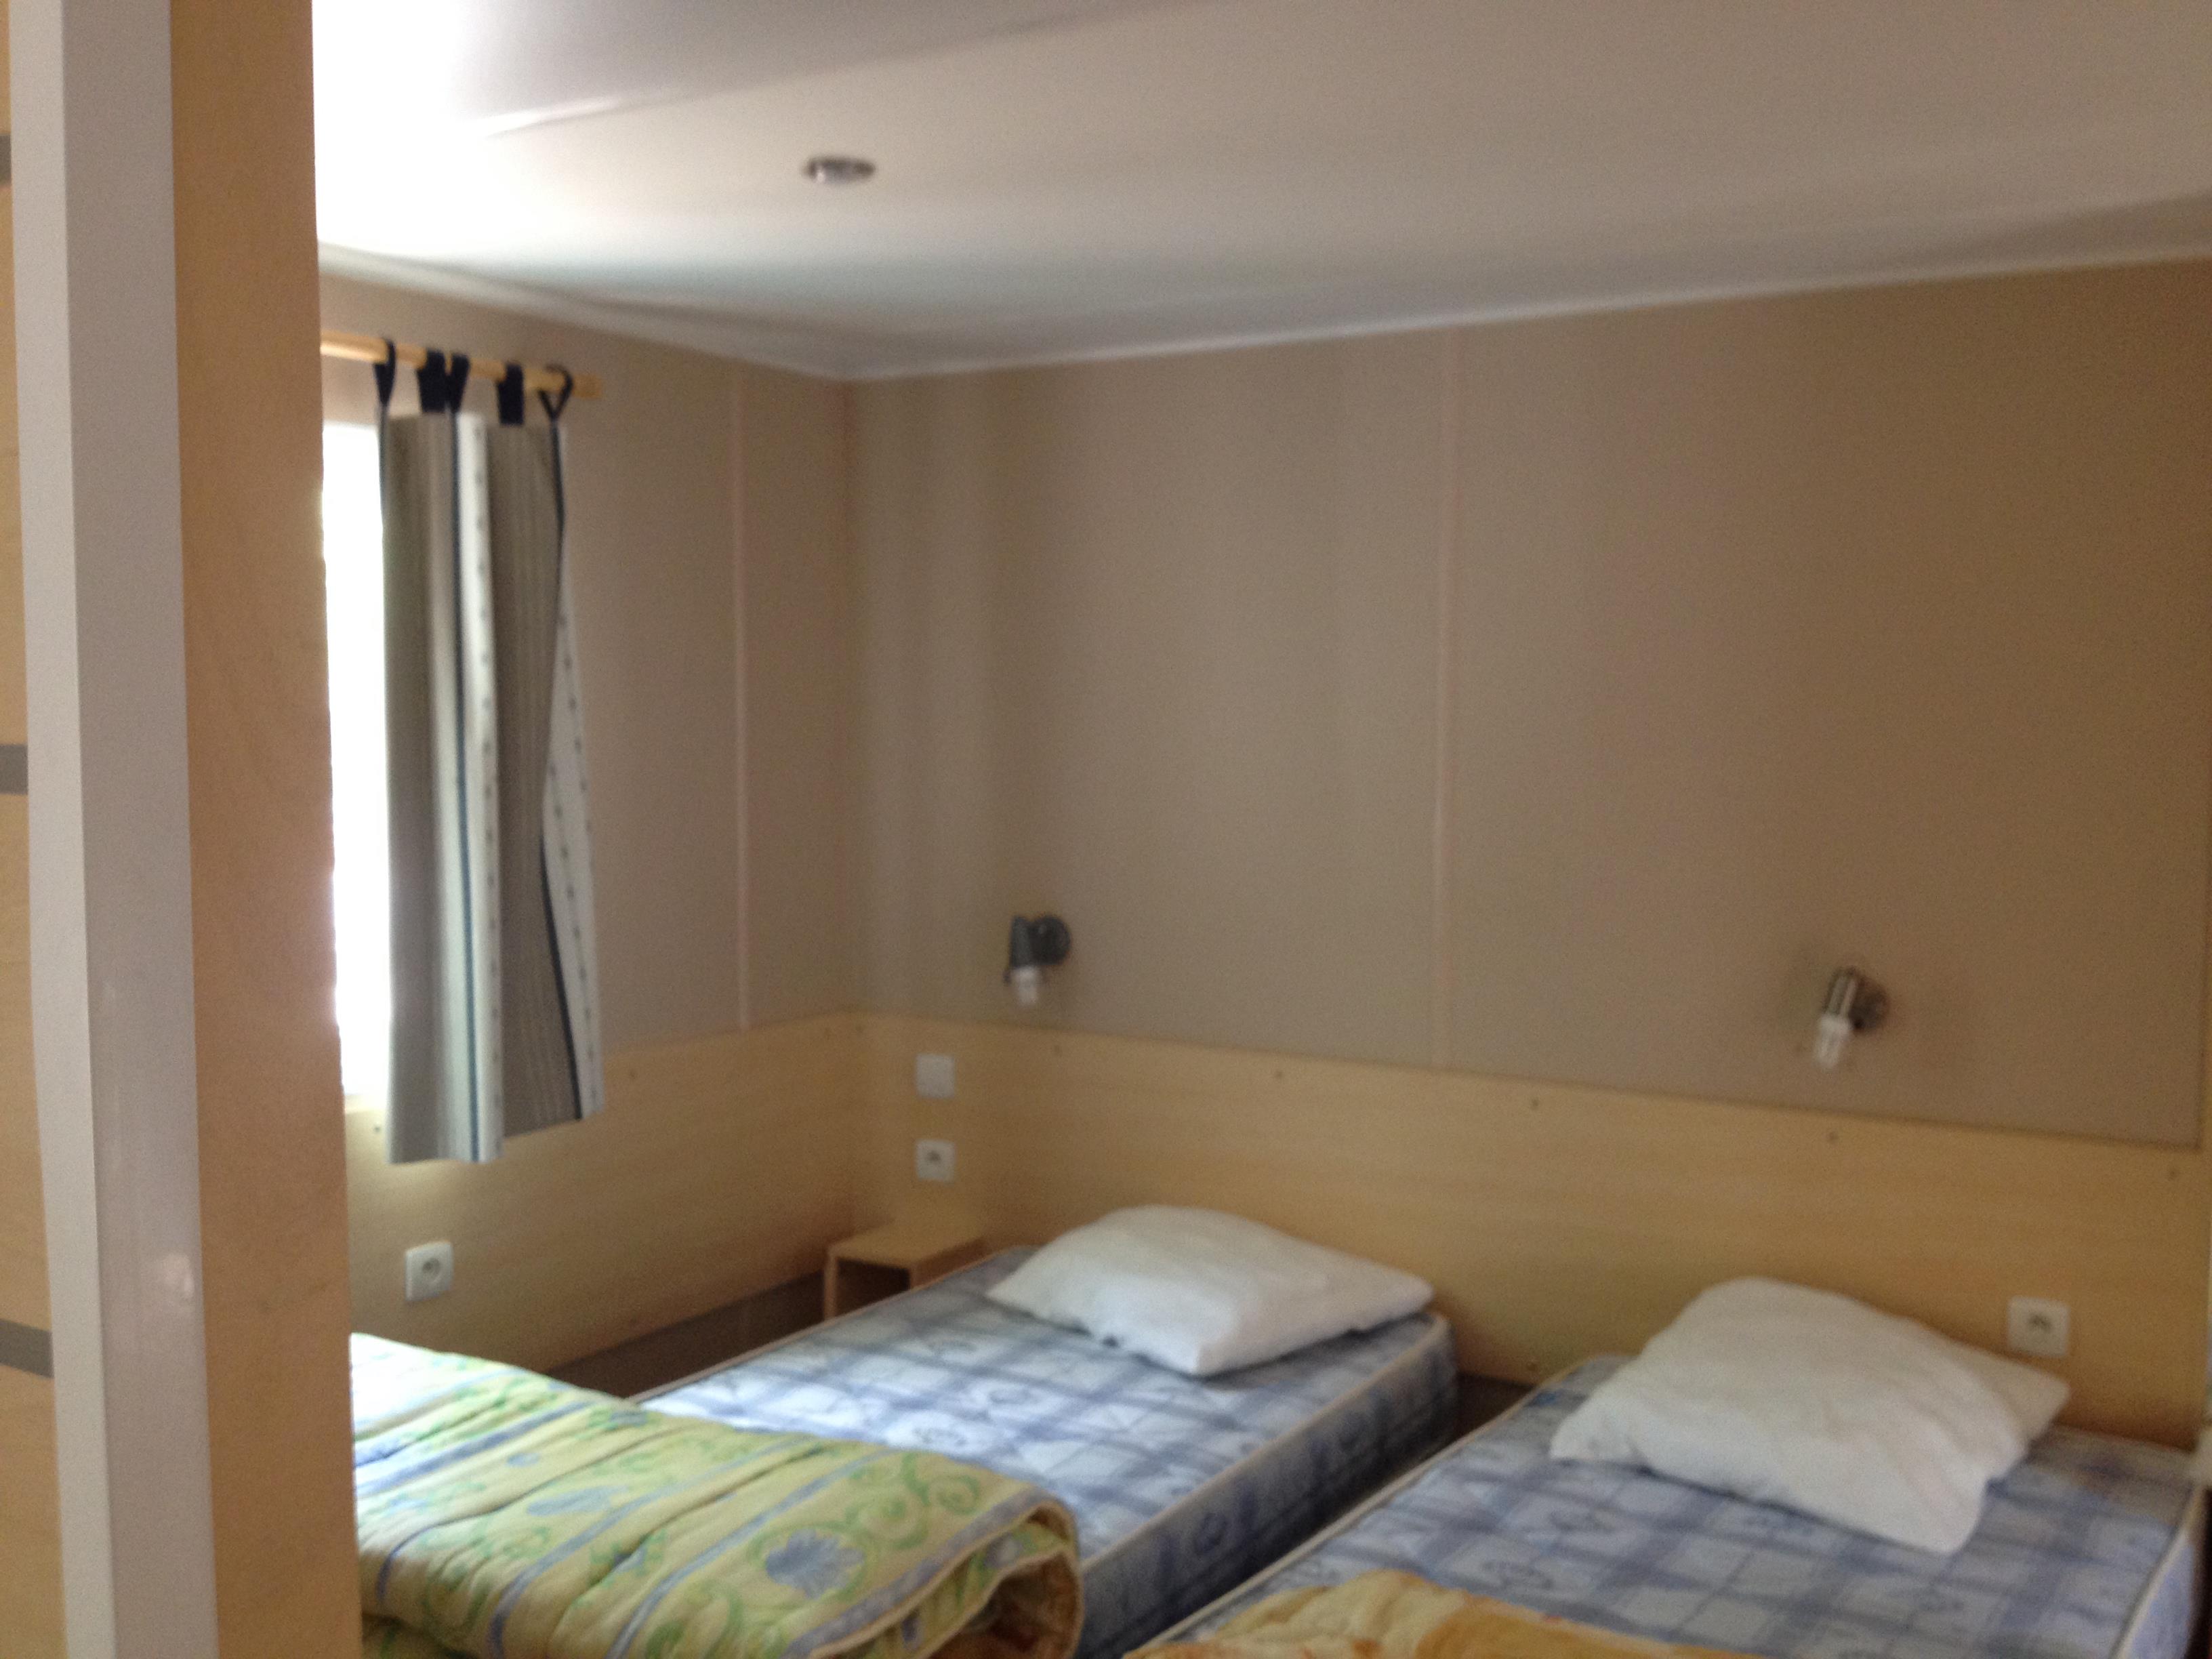 Mietunterkunft - Mobile Home Ausgestattet Für Behindertes Irm N°18 2 Zimmer - Camping Le Sous-Bois